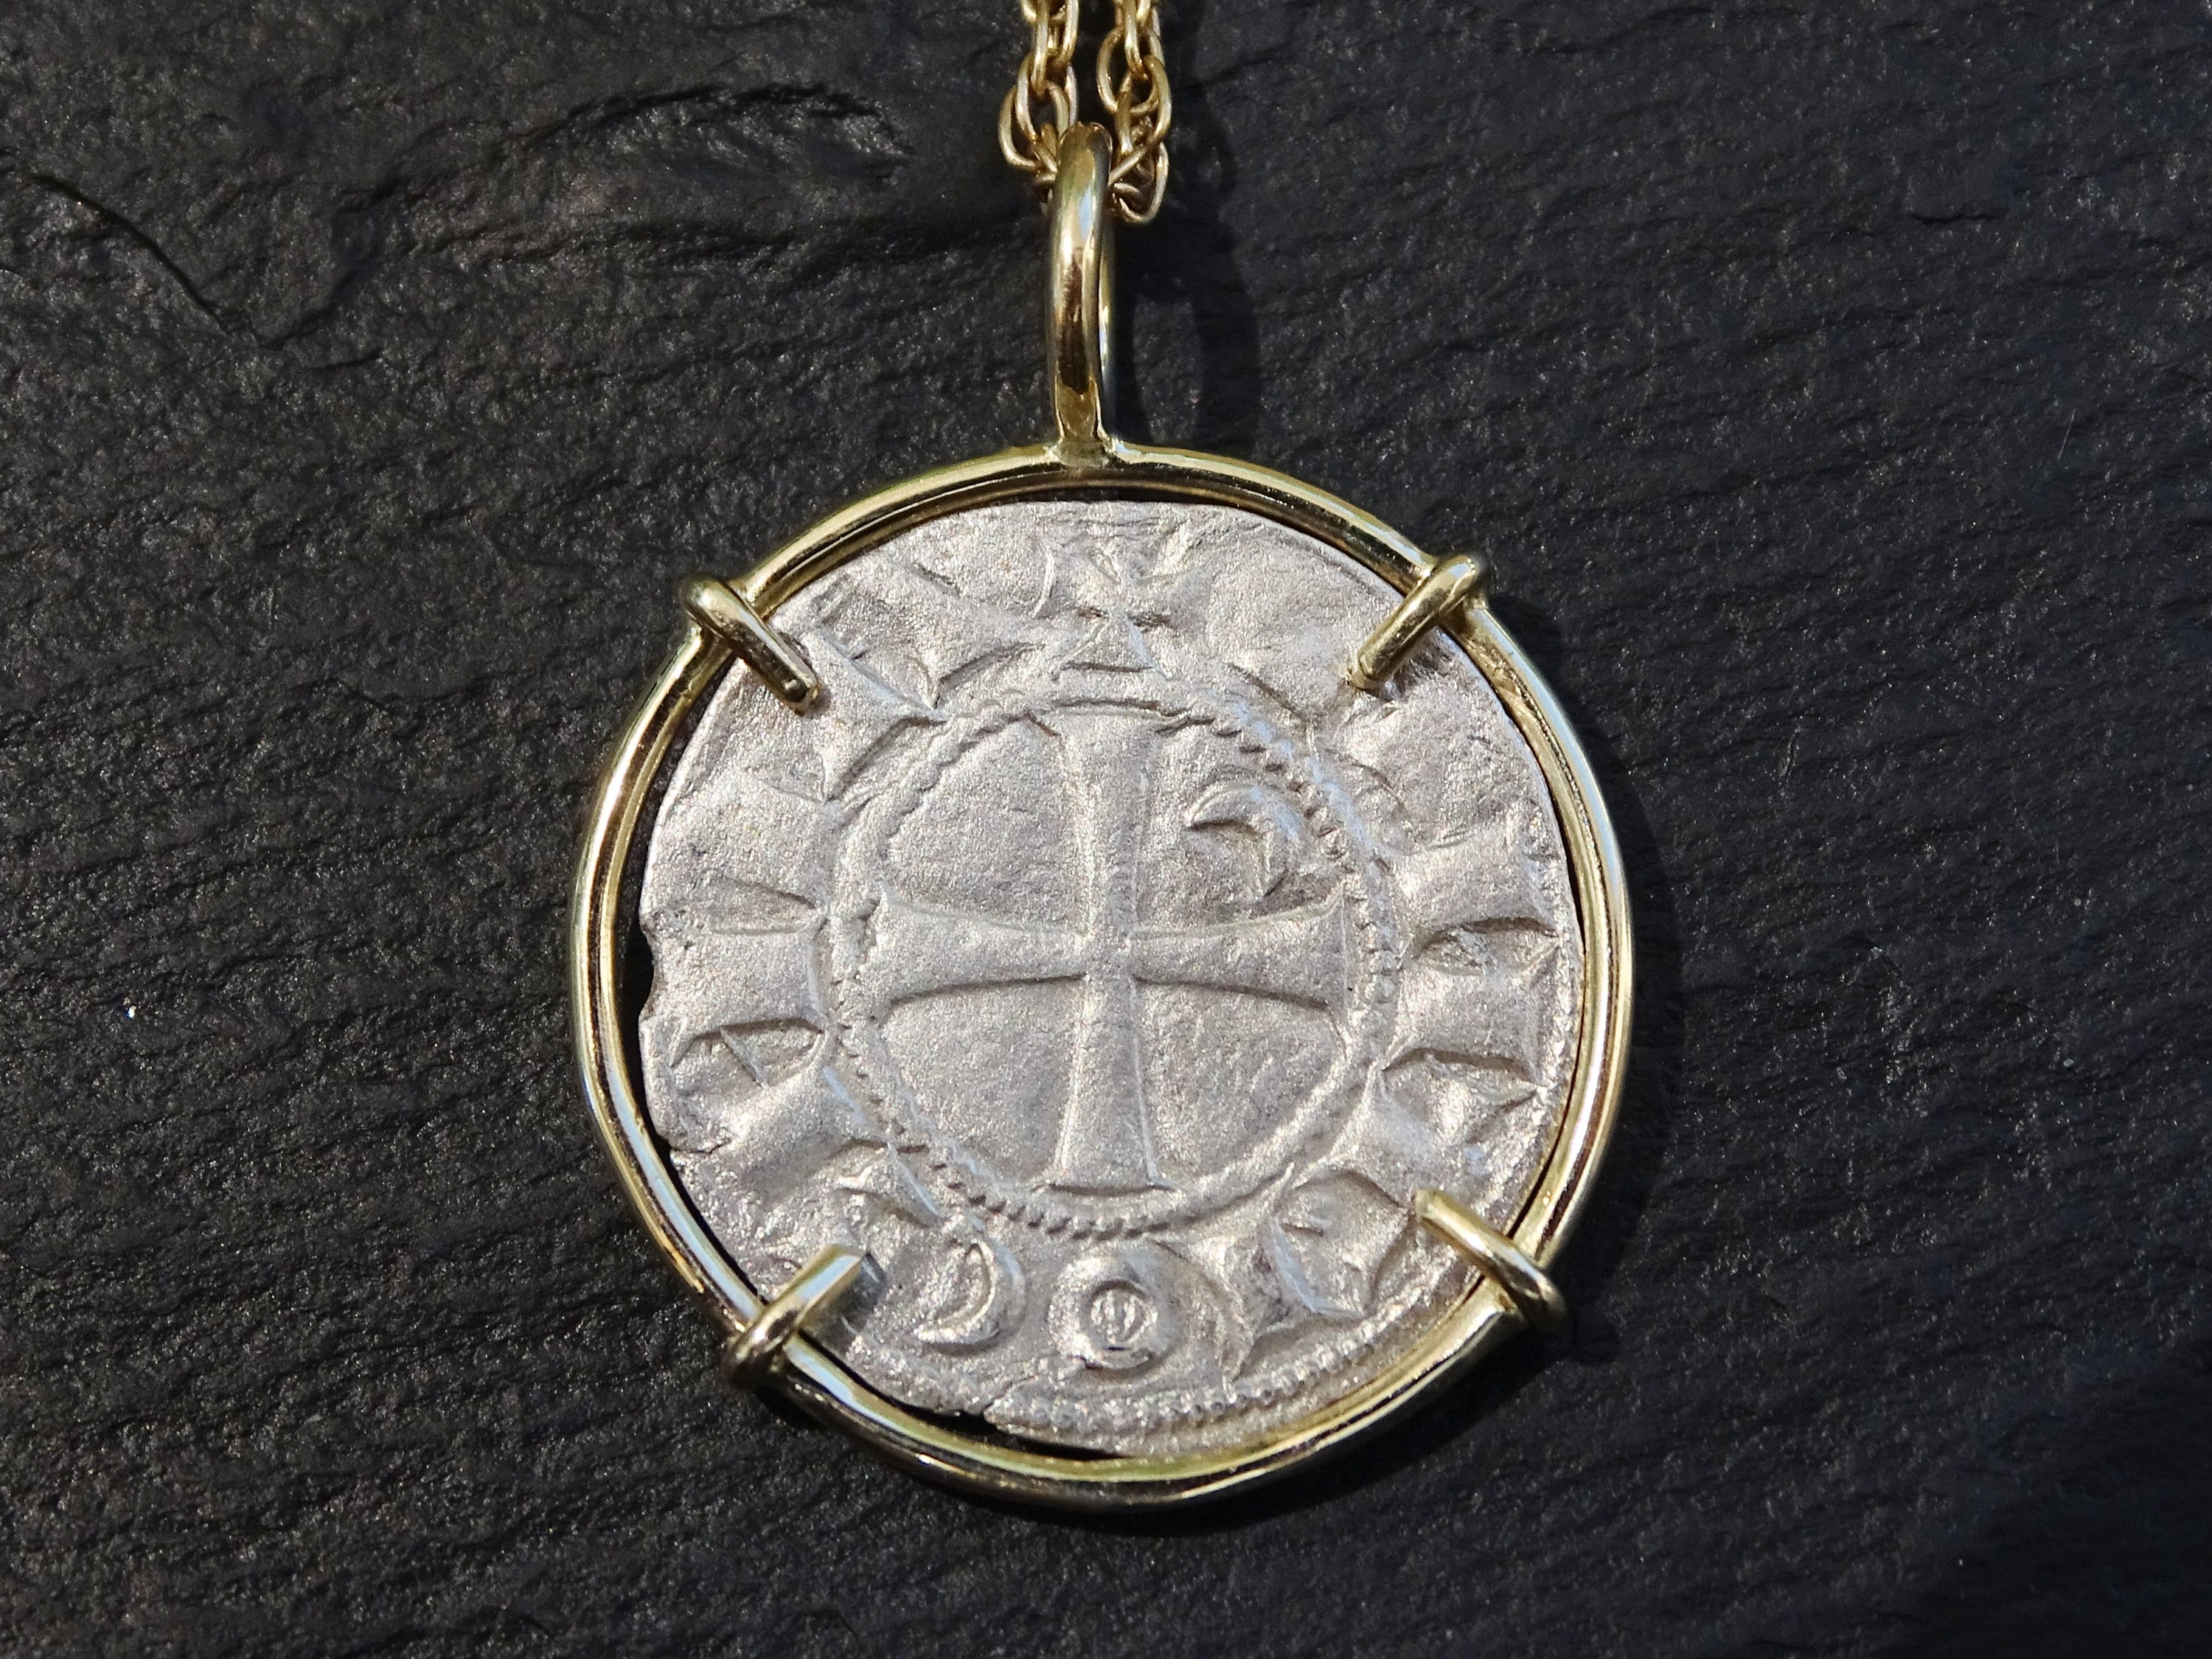 Knights Templar coin pendant set in 14k gold - Bohemond III of Antioch